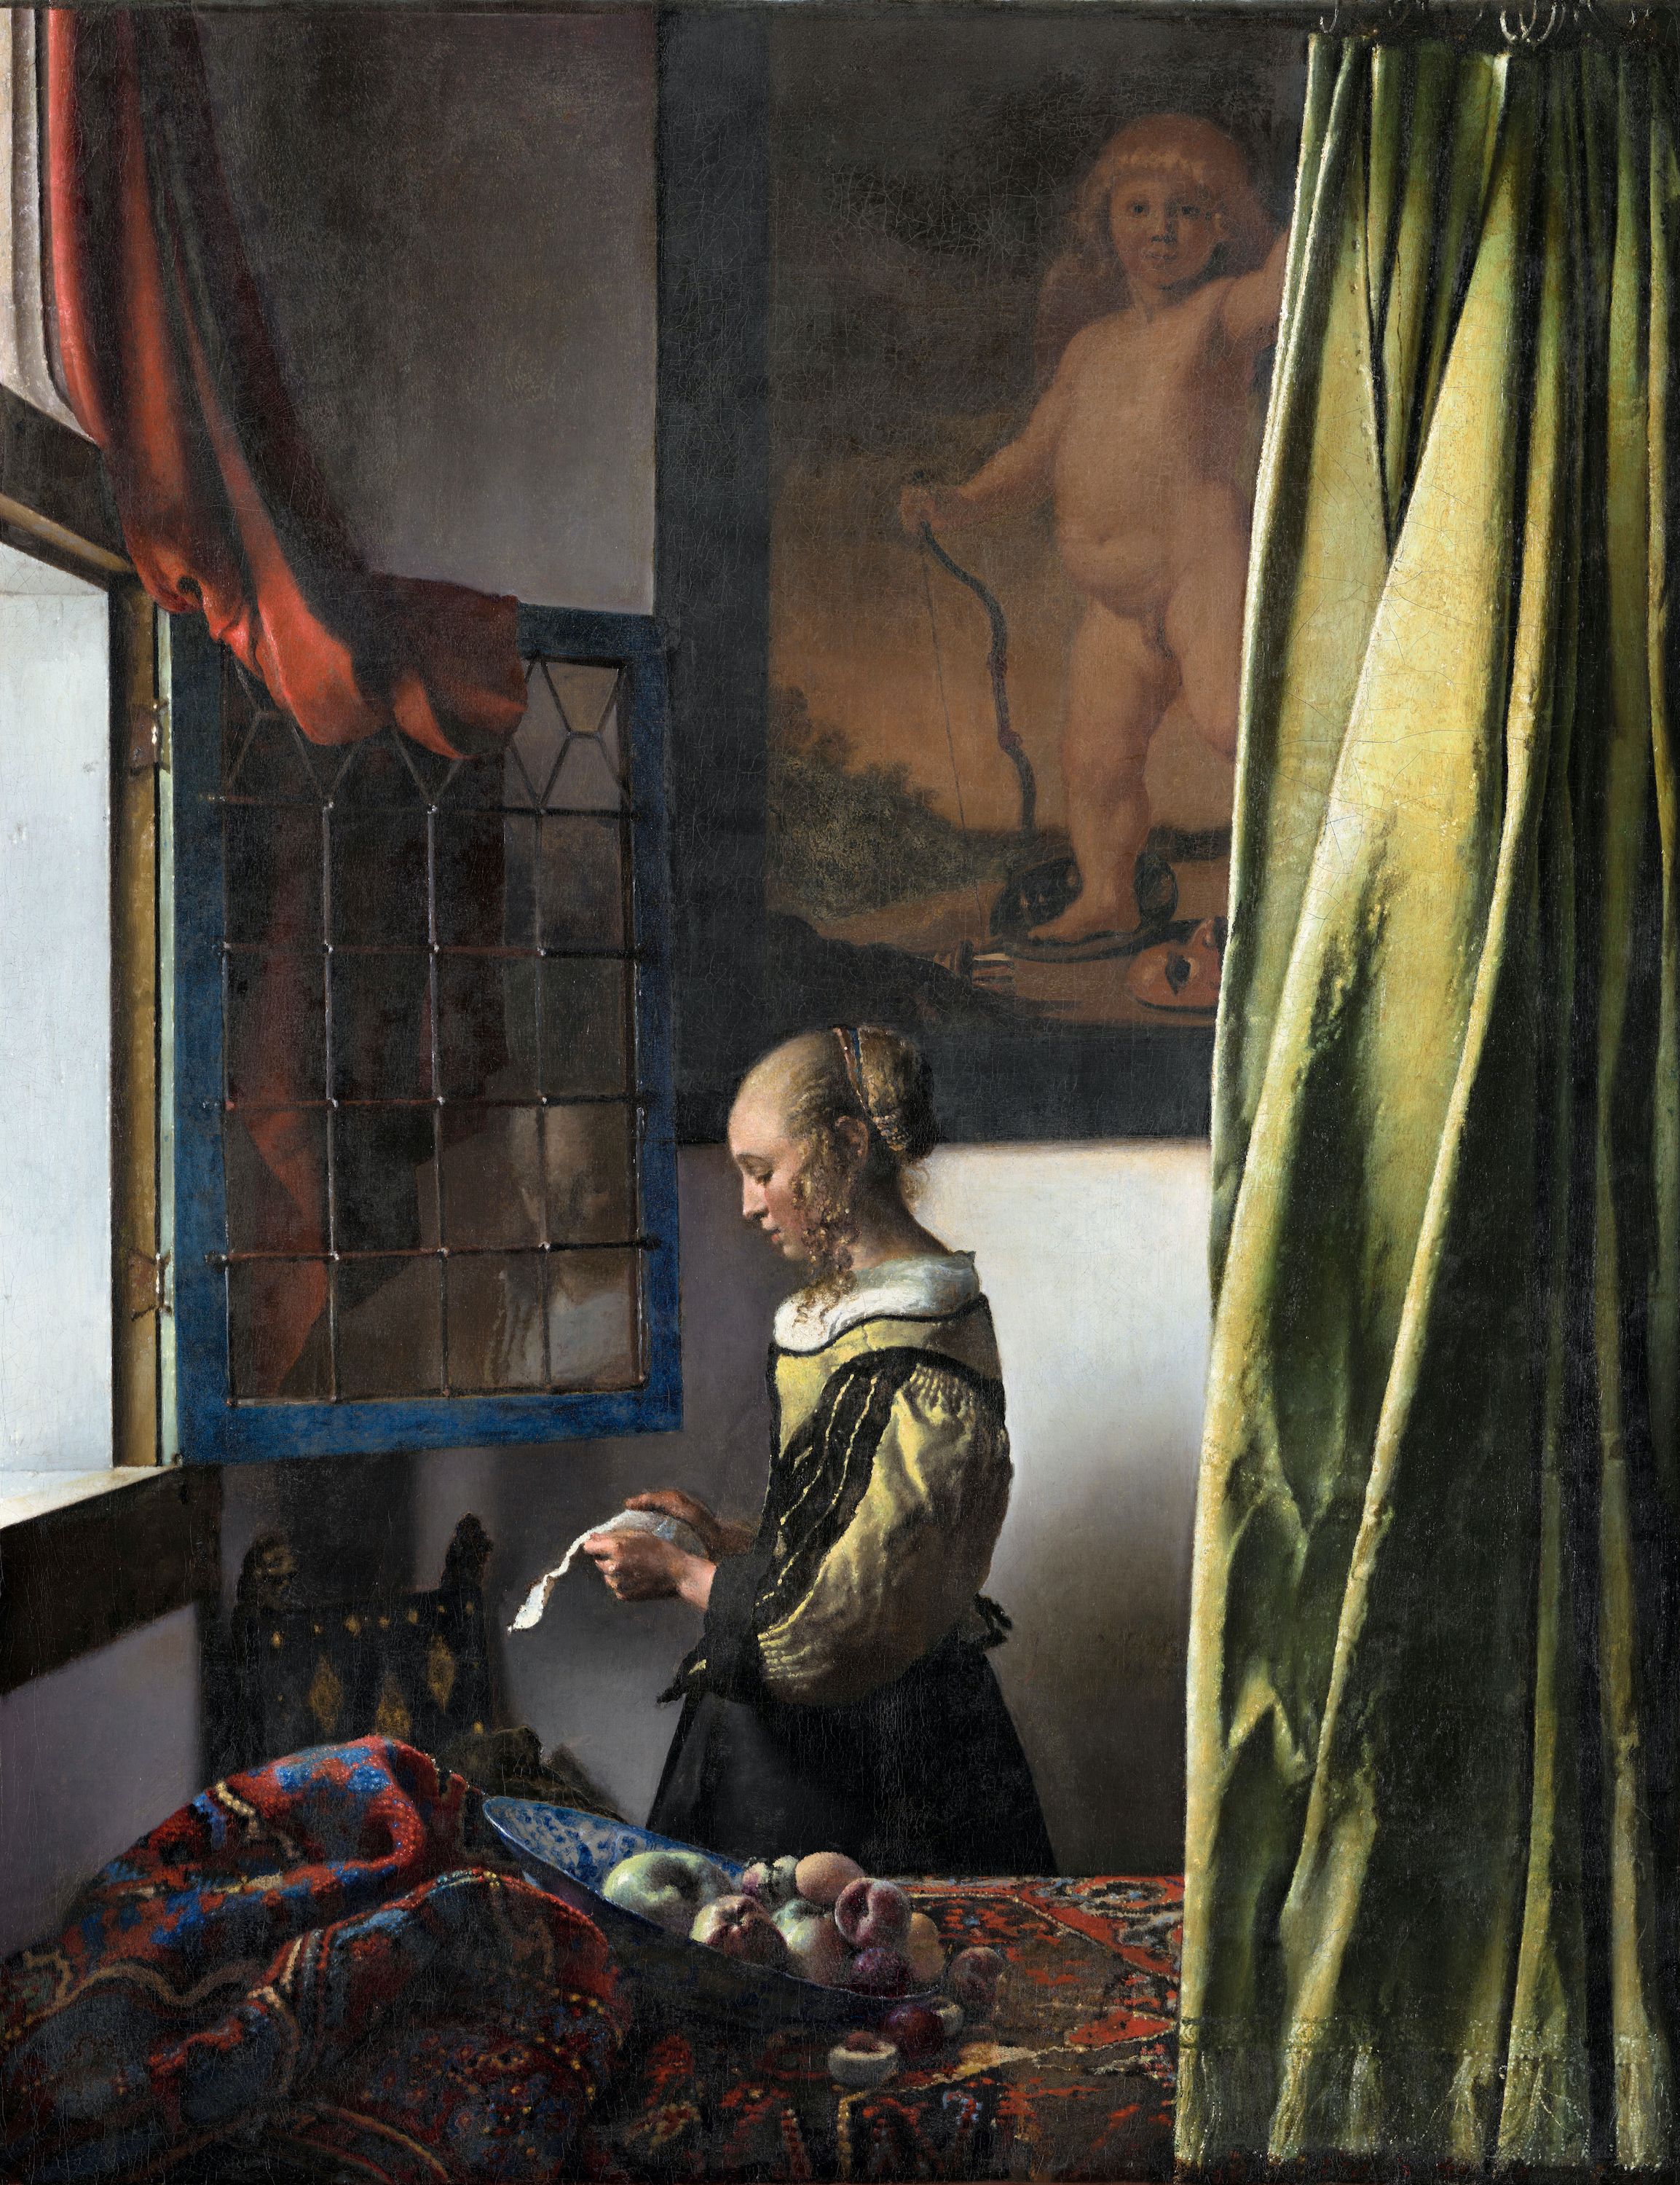 Muchacha leyendo una carta by Johannes Vermeer - 1657 - 1659 - 83 x 64,5 cm Colecciones estatales de arte de Dresde